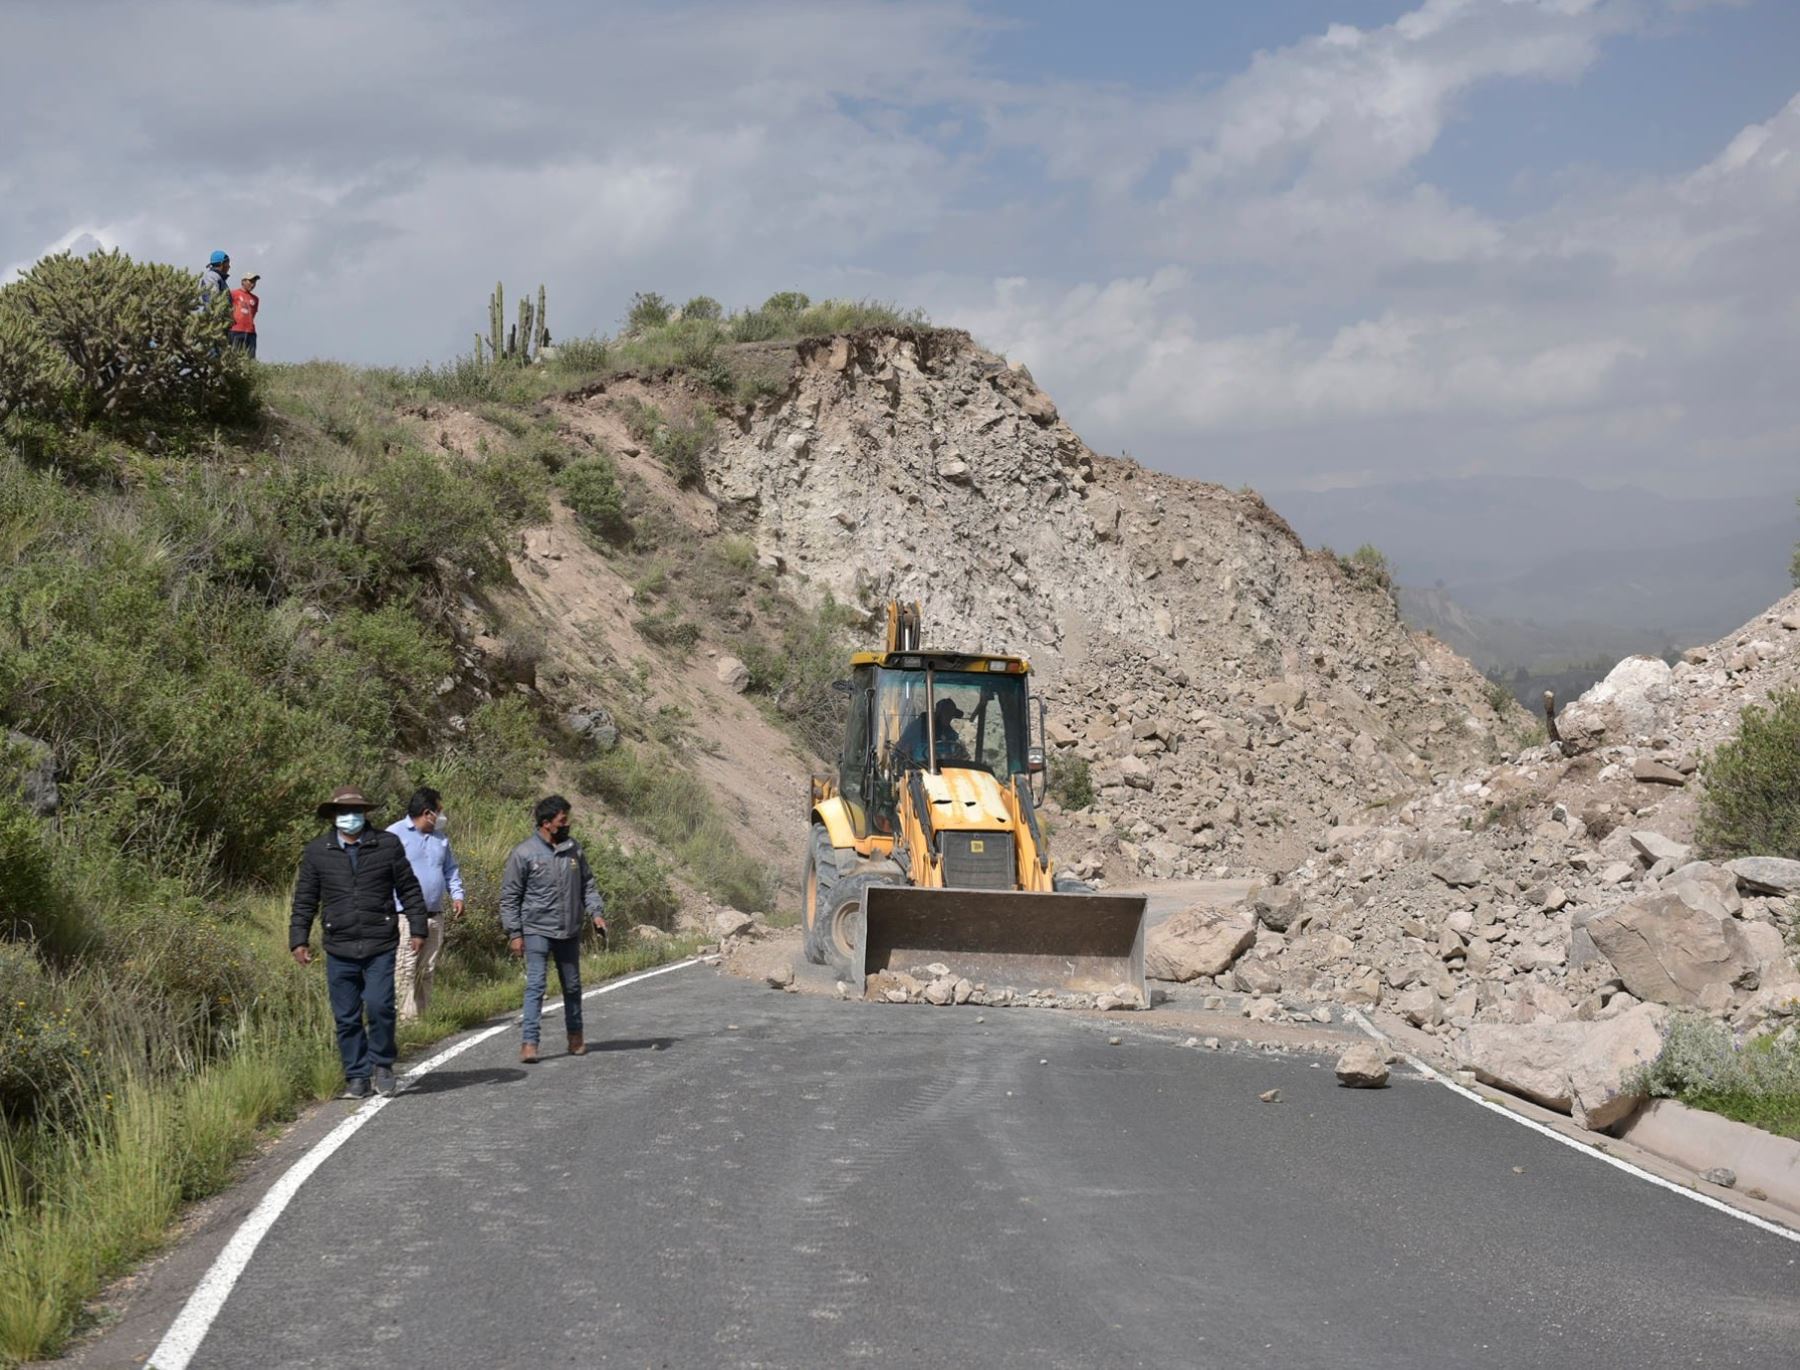 Continúa suspendido el ingreso de turistas al valle de Colca debido a los daños causados por los continuos sismos que se registran desde el martes 15 en la provincia de Caylloma, en Arequipa. ANDINA/Difusión